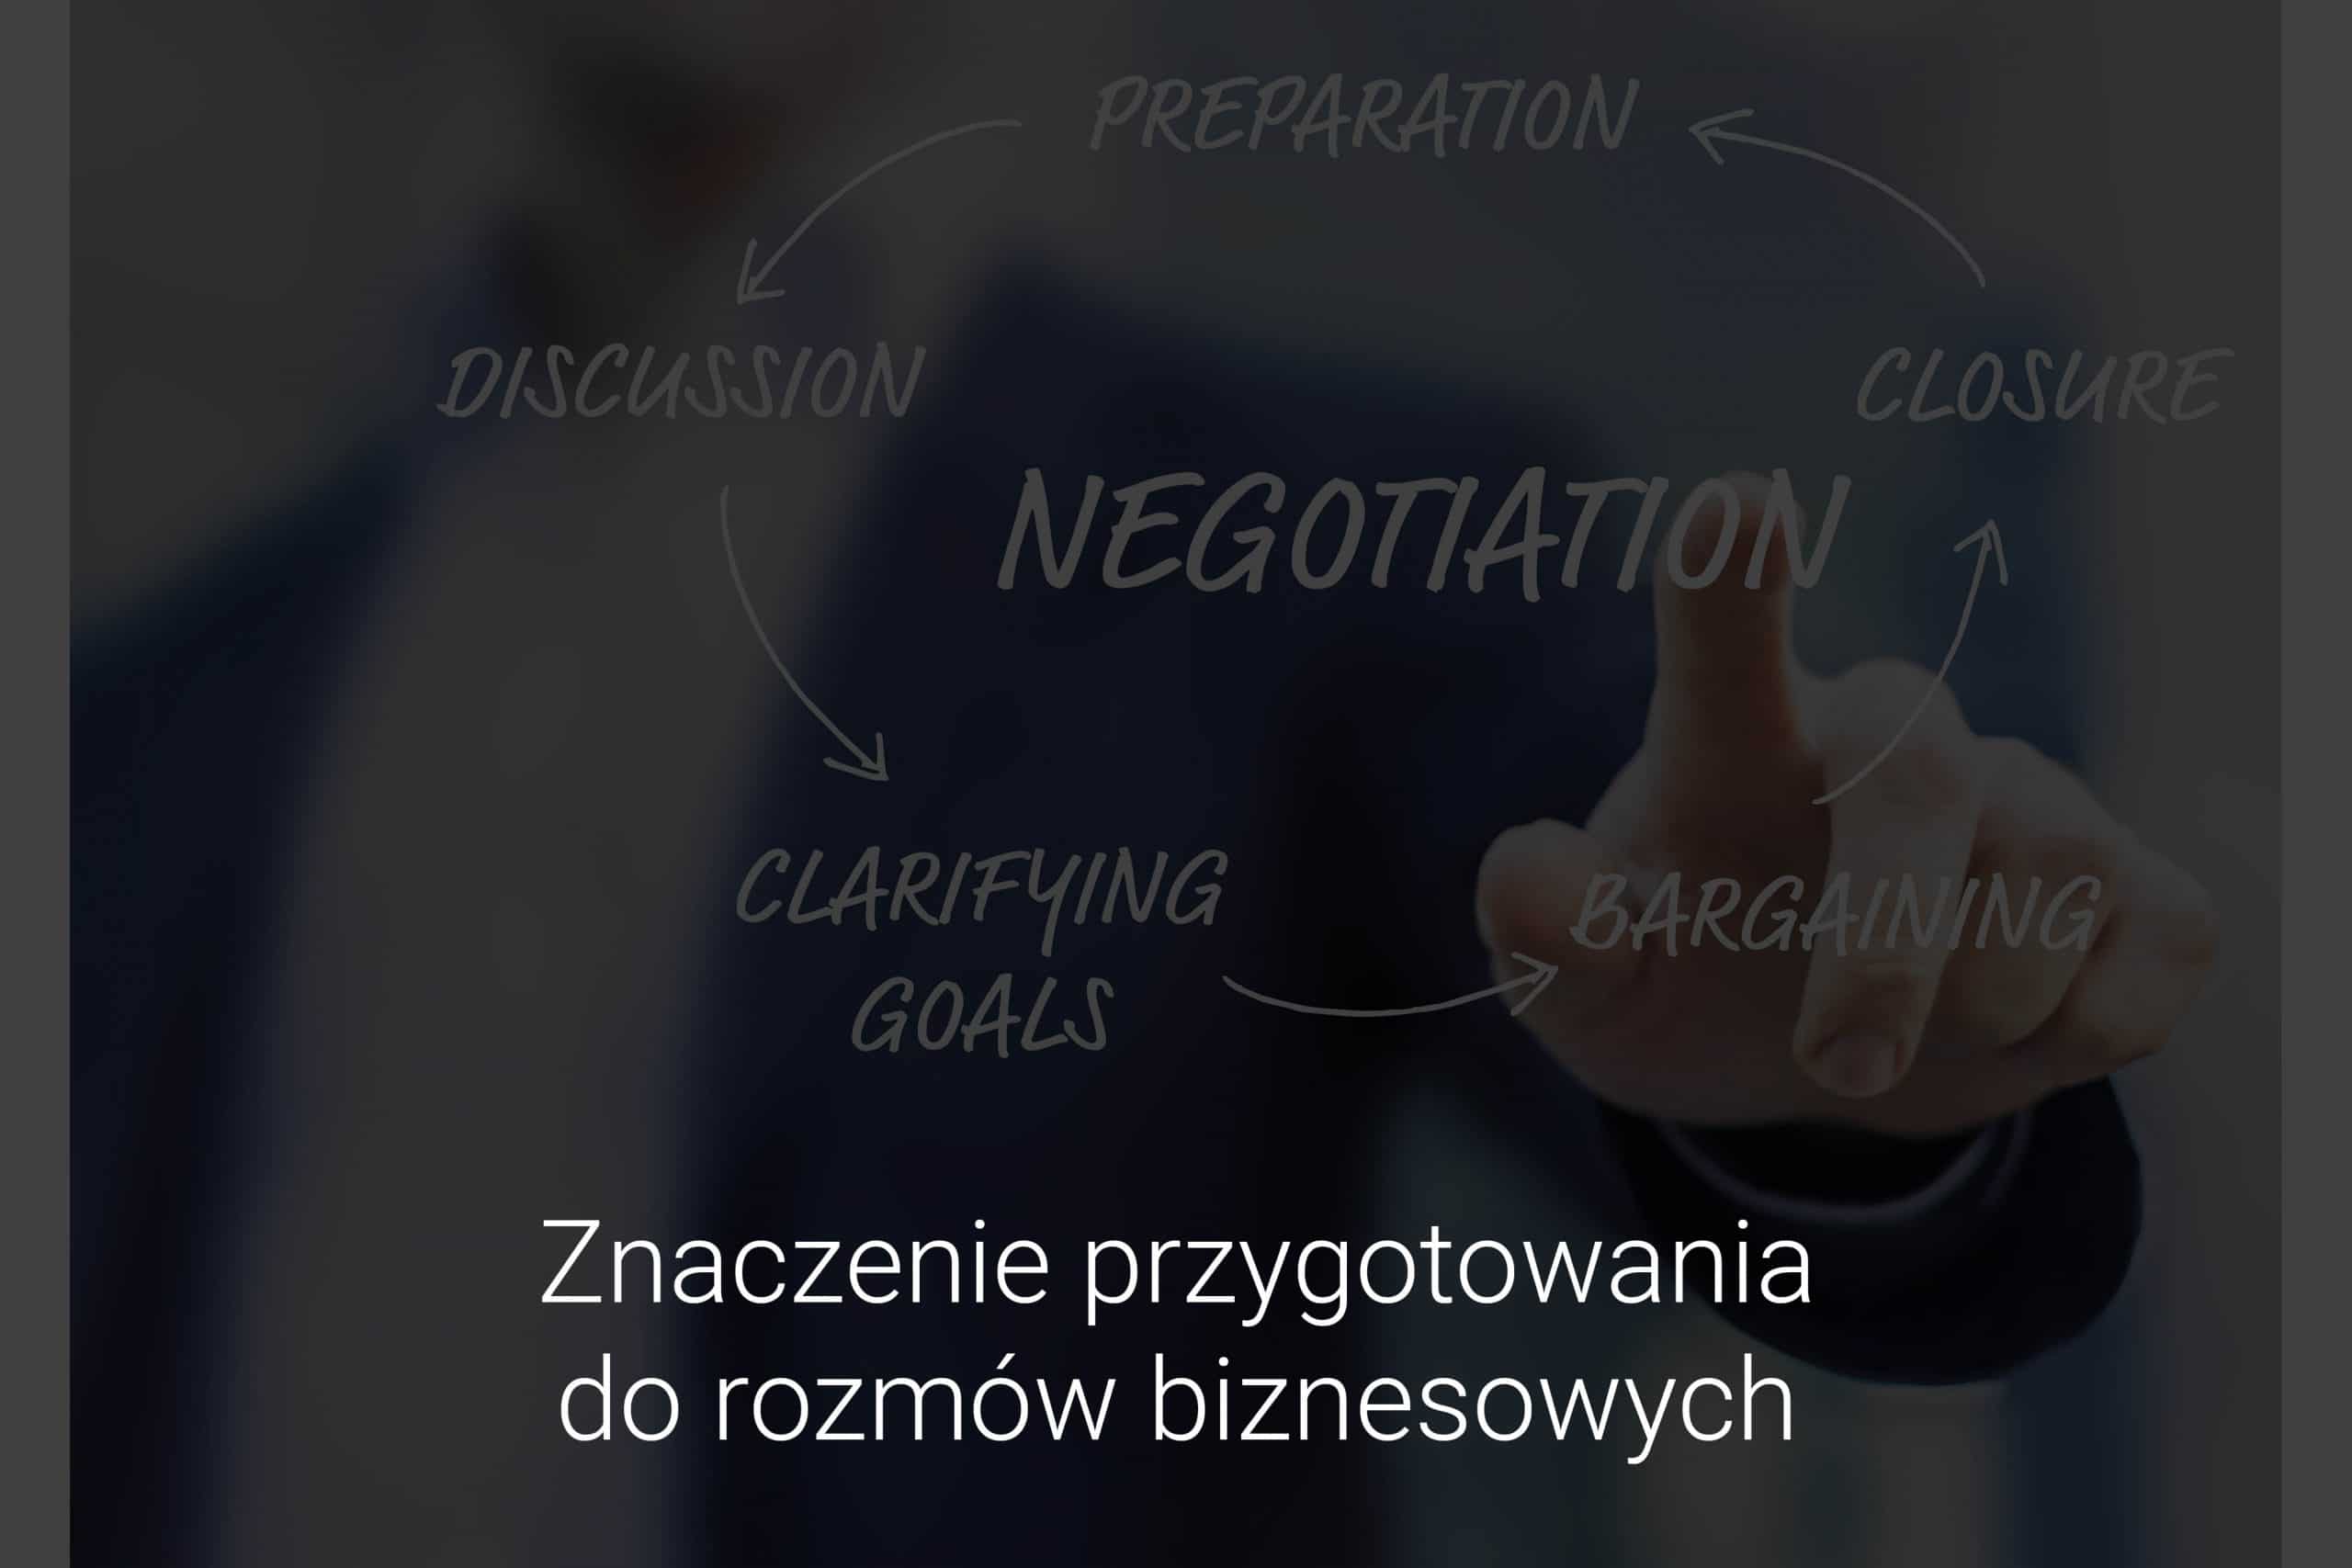 Znaczenie przygotowania do rozmow biznesowych - warsztaty negocjacyjne Eveneum